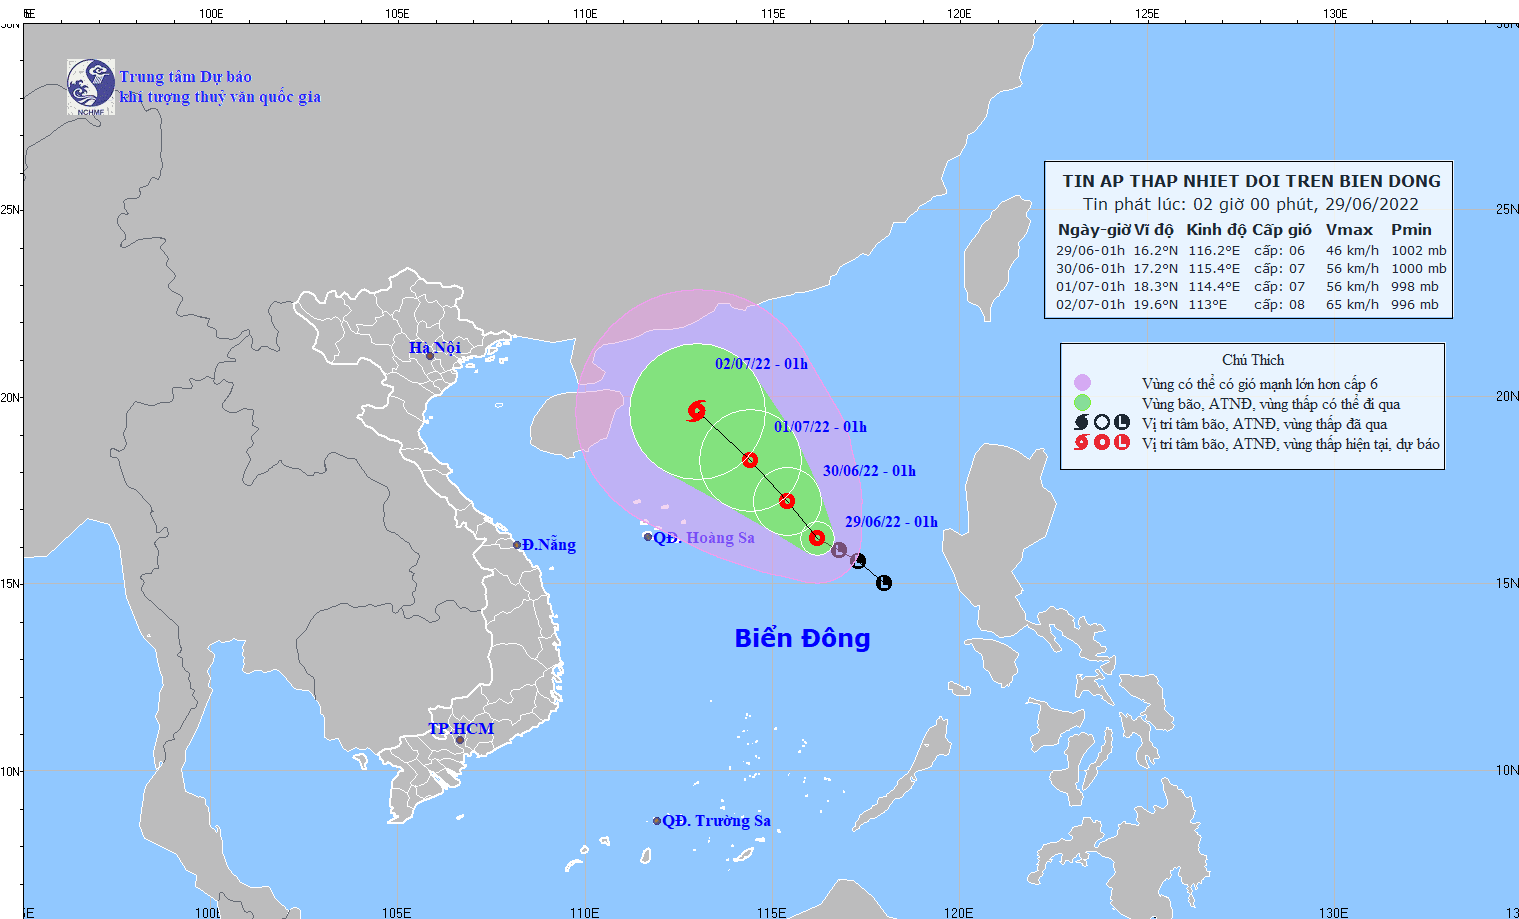 Ứng phó áp thấp nhiệt đới trên Biển Đông